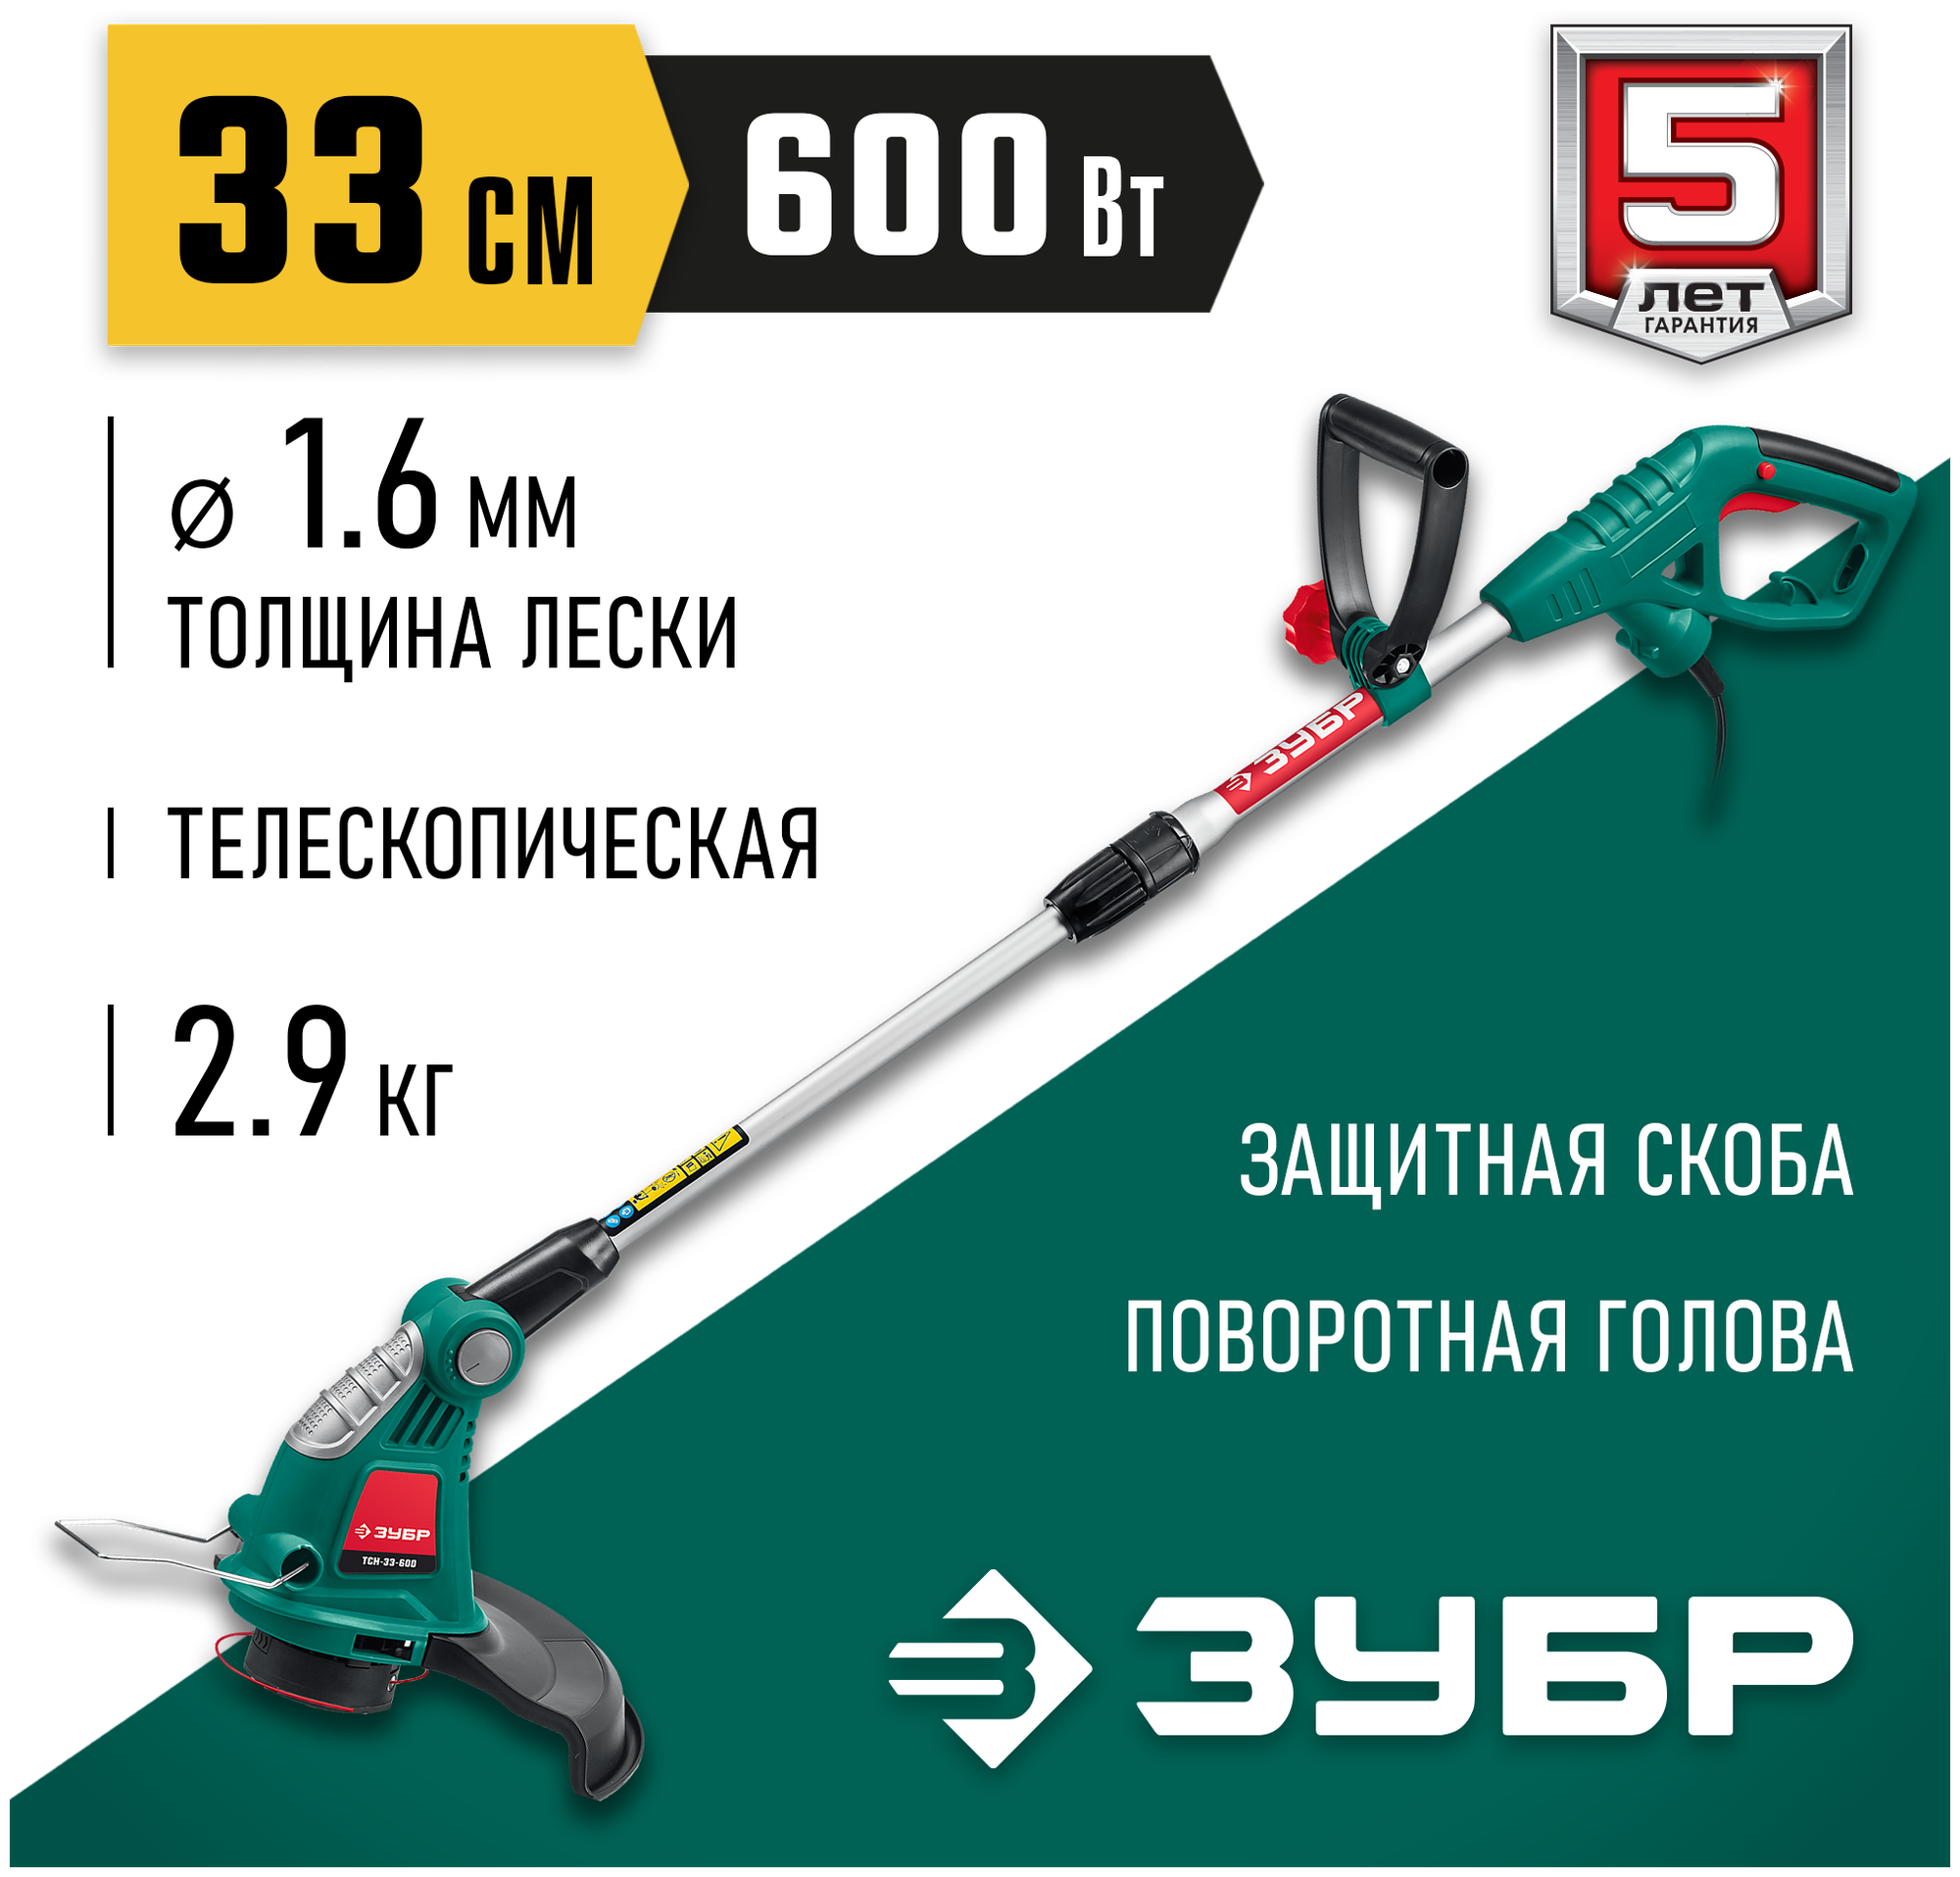 ЗУБР 600 Вт ш/с 33 см триммер сетевой ТСН-33-600 Мастер